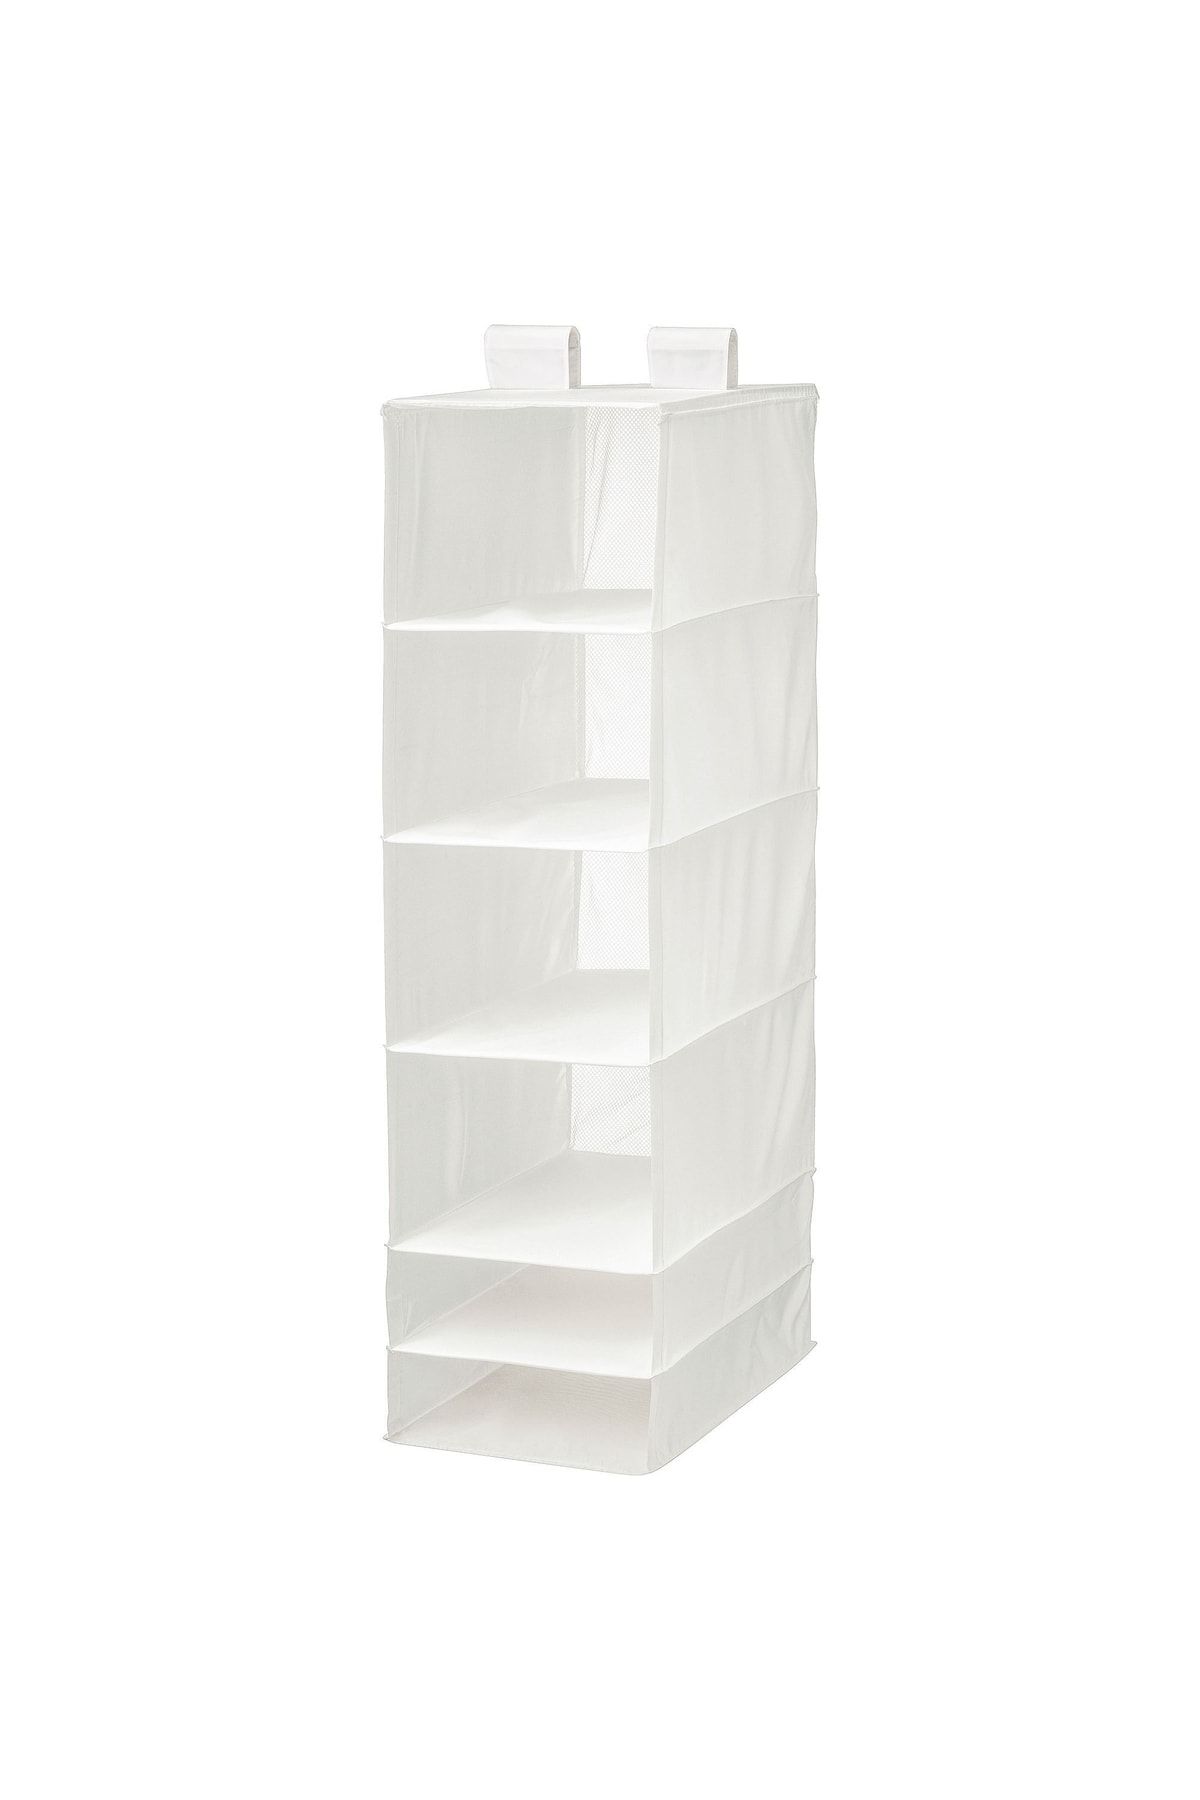 IKEA Dolap Içi Asılabilir Bölmeli Düzenleyici Ölçü 35x45x125 Cm Beyaz Renk Bölmeli Düzenleyici